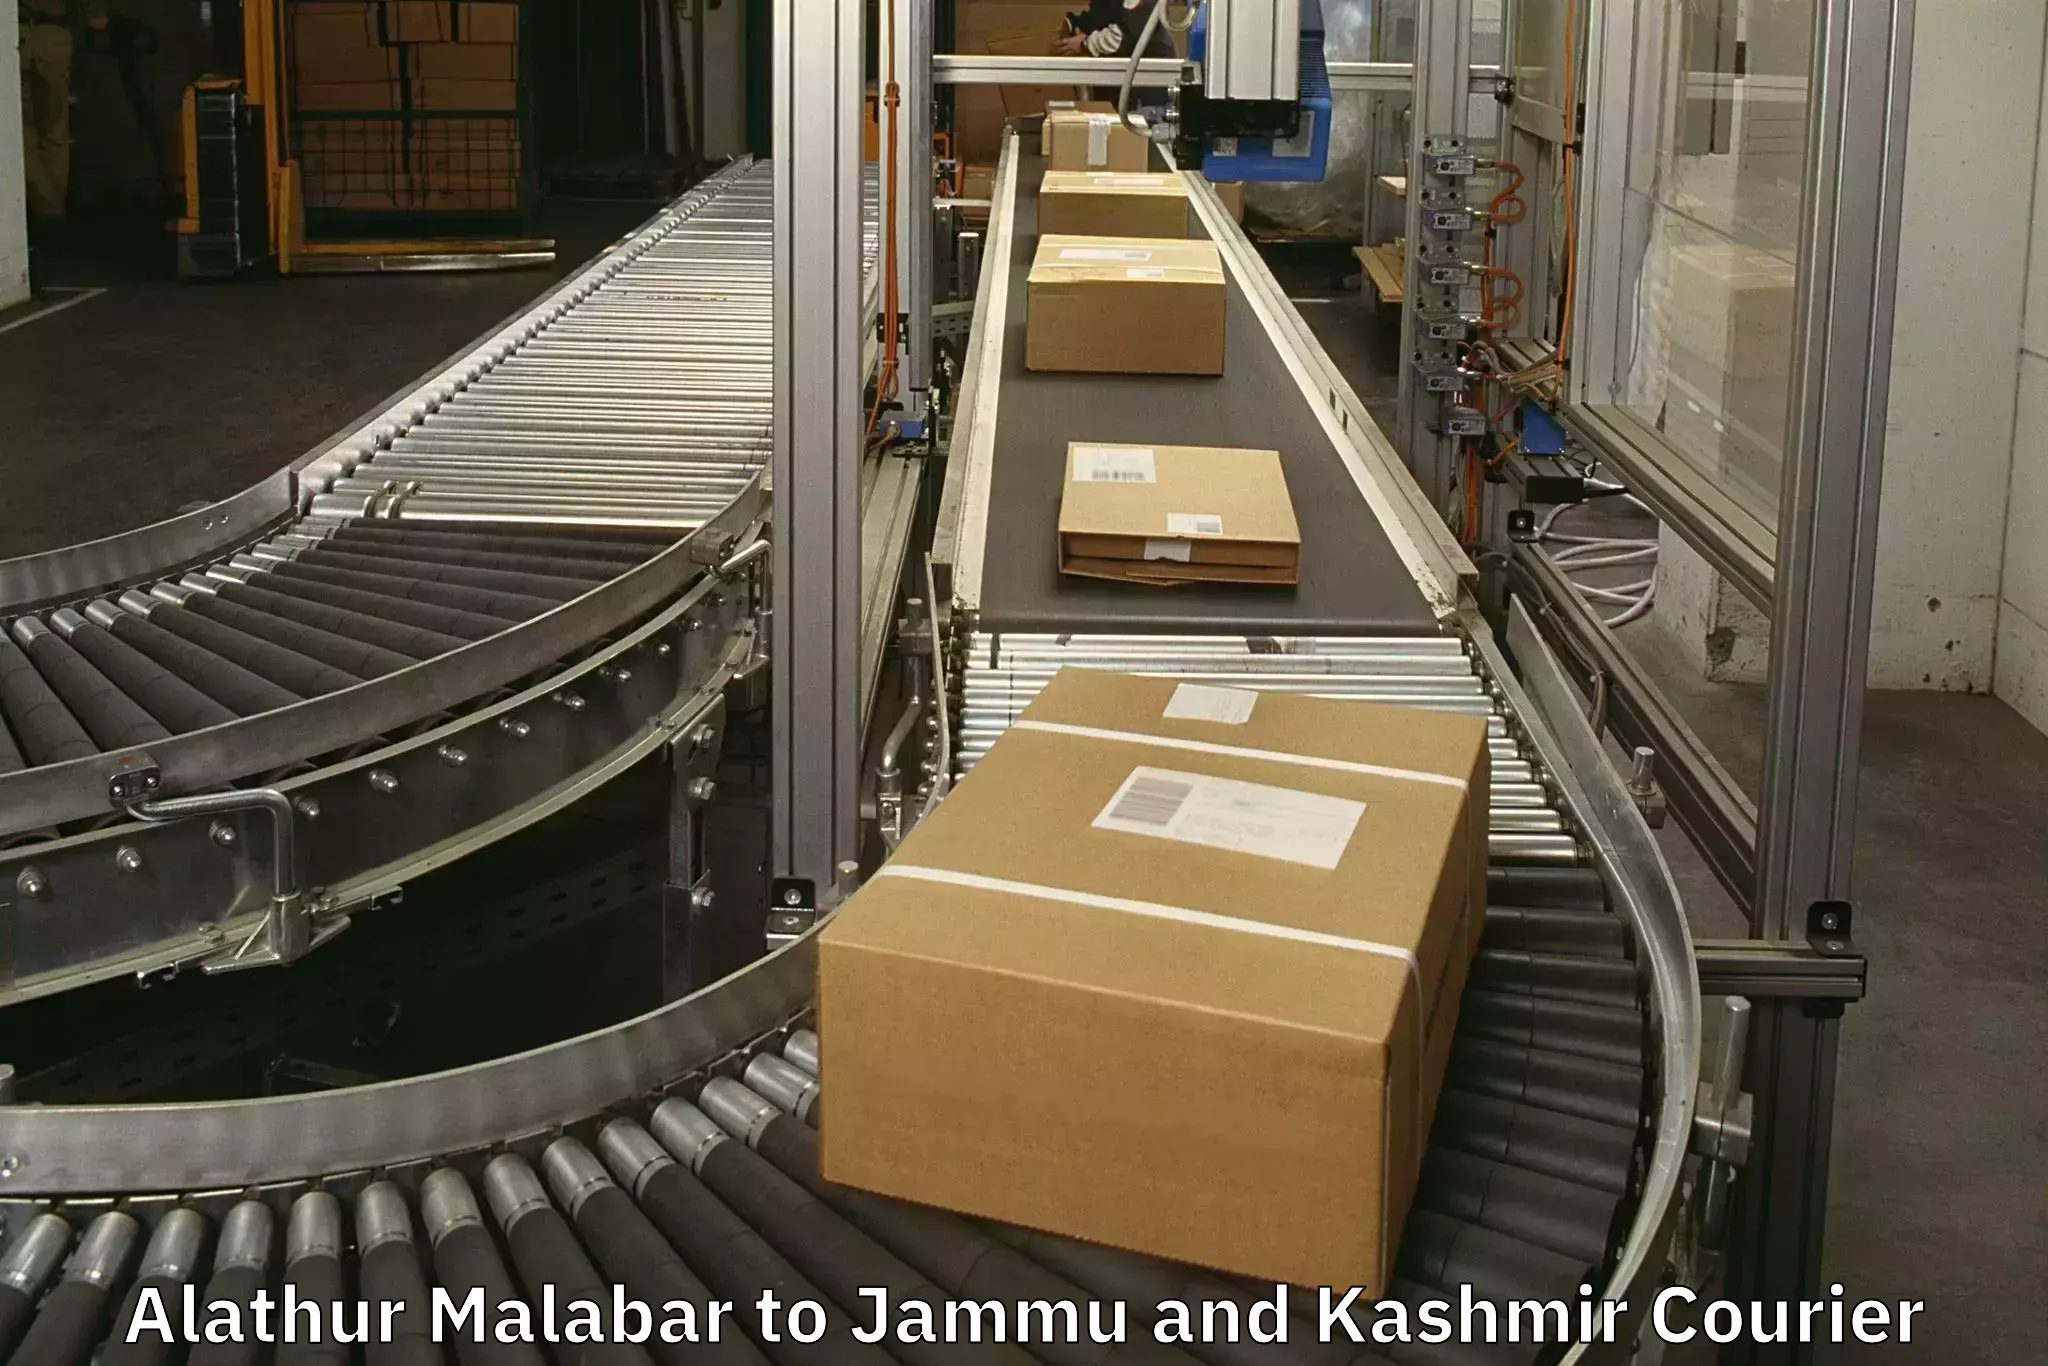 Baggage shipping advice Alathur Malabar to Srinagar Kashmir